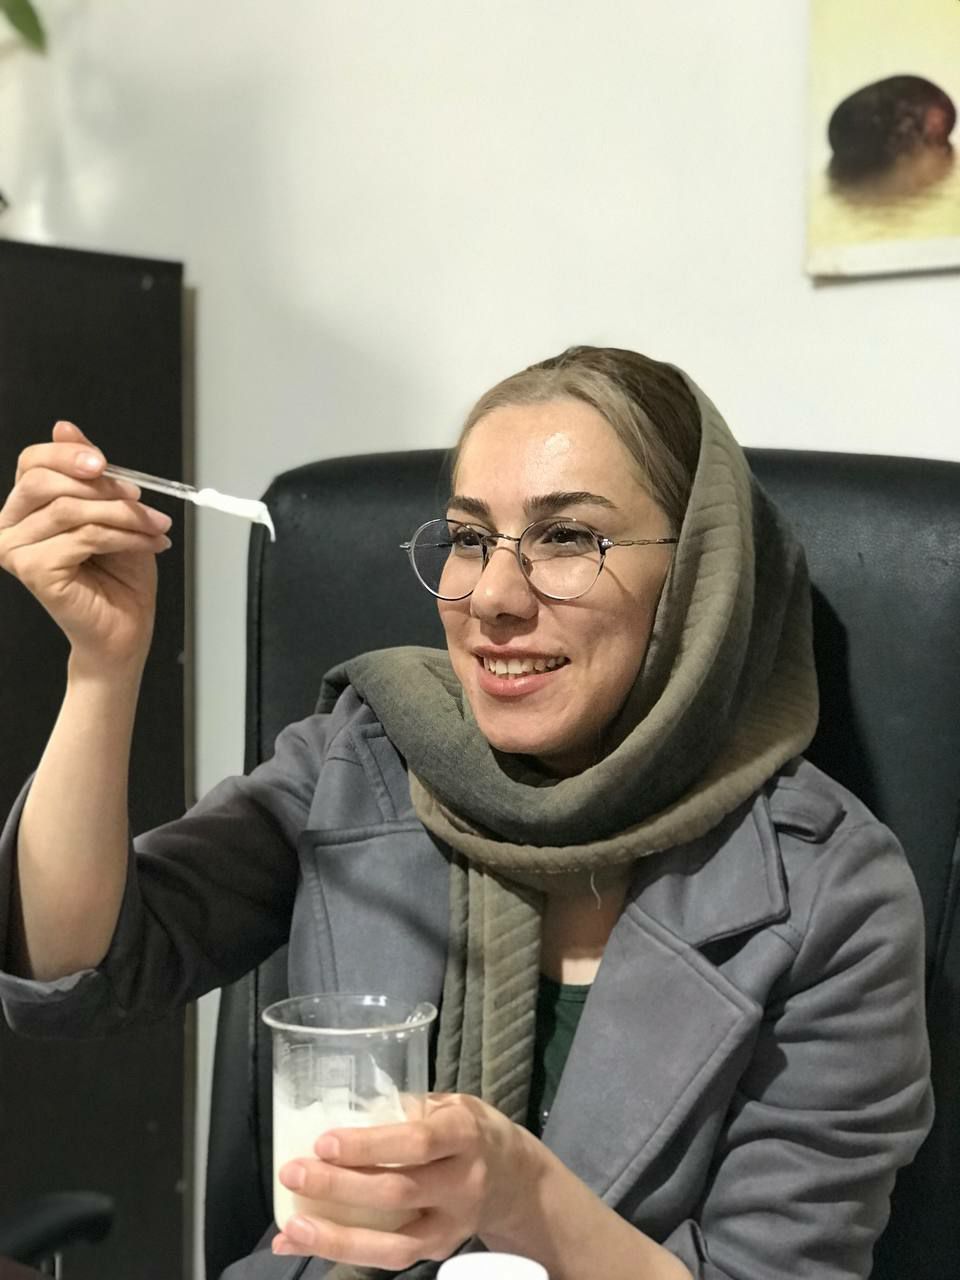 گفتگویی اختصاصی با خانم افسانه احمدی دانش آموخته رشته شیمی، فرمولاتور و کارآفرین